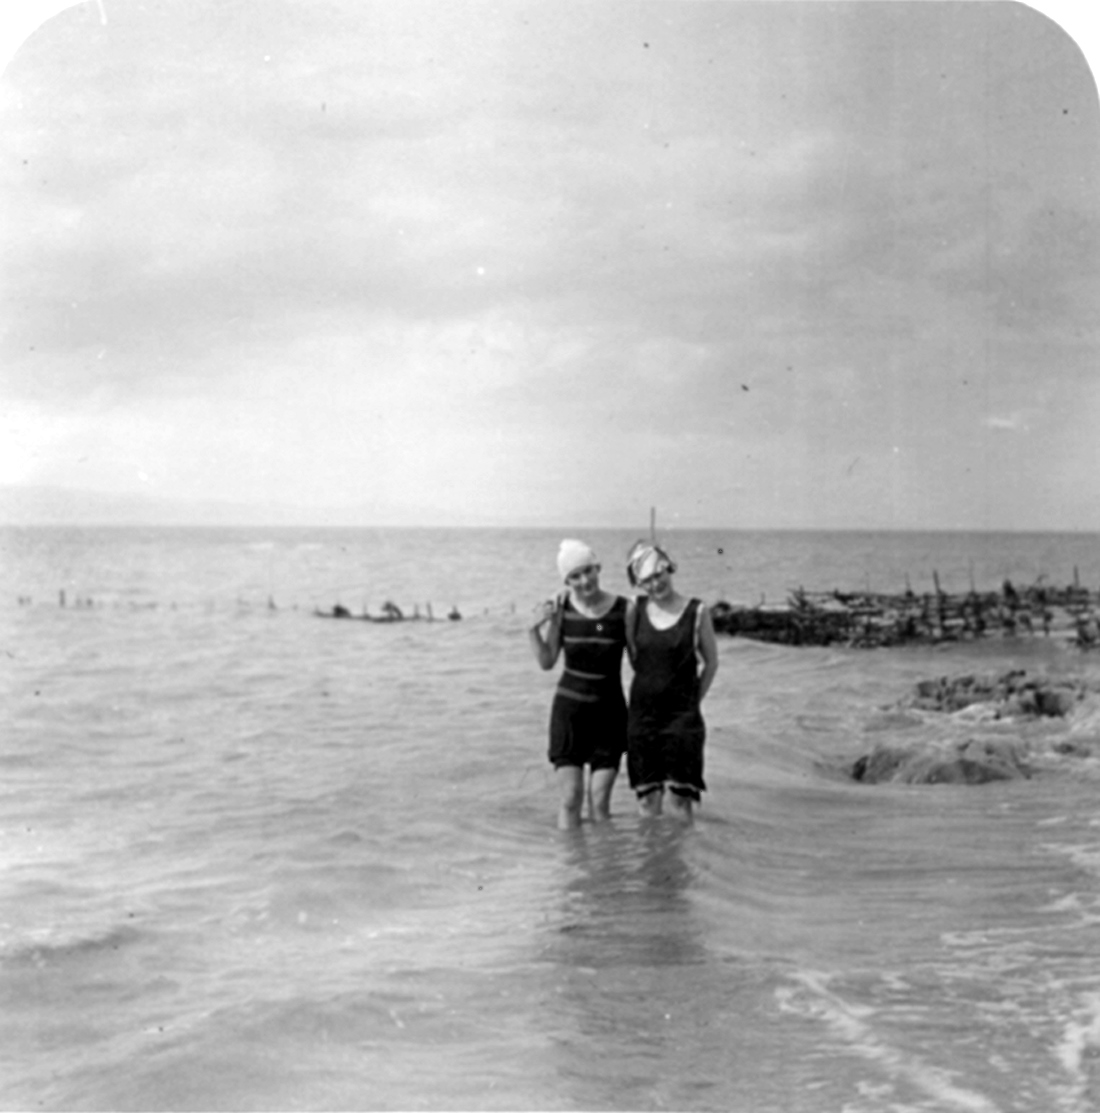 Deux jeunes femmes se baignent jusqu’aux genoux dans un grand cours d’eau, près d’une pêche à fascine.